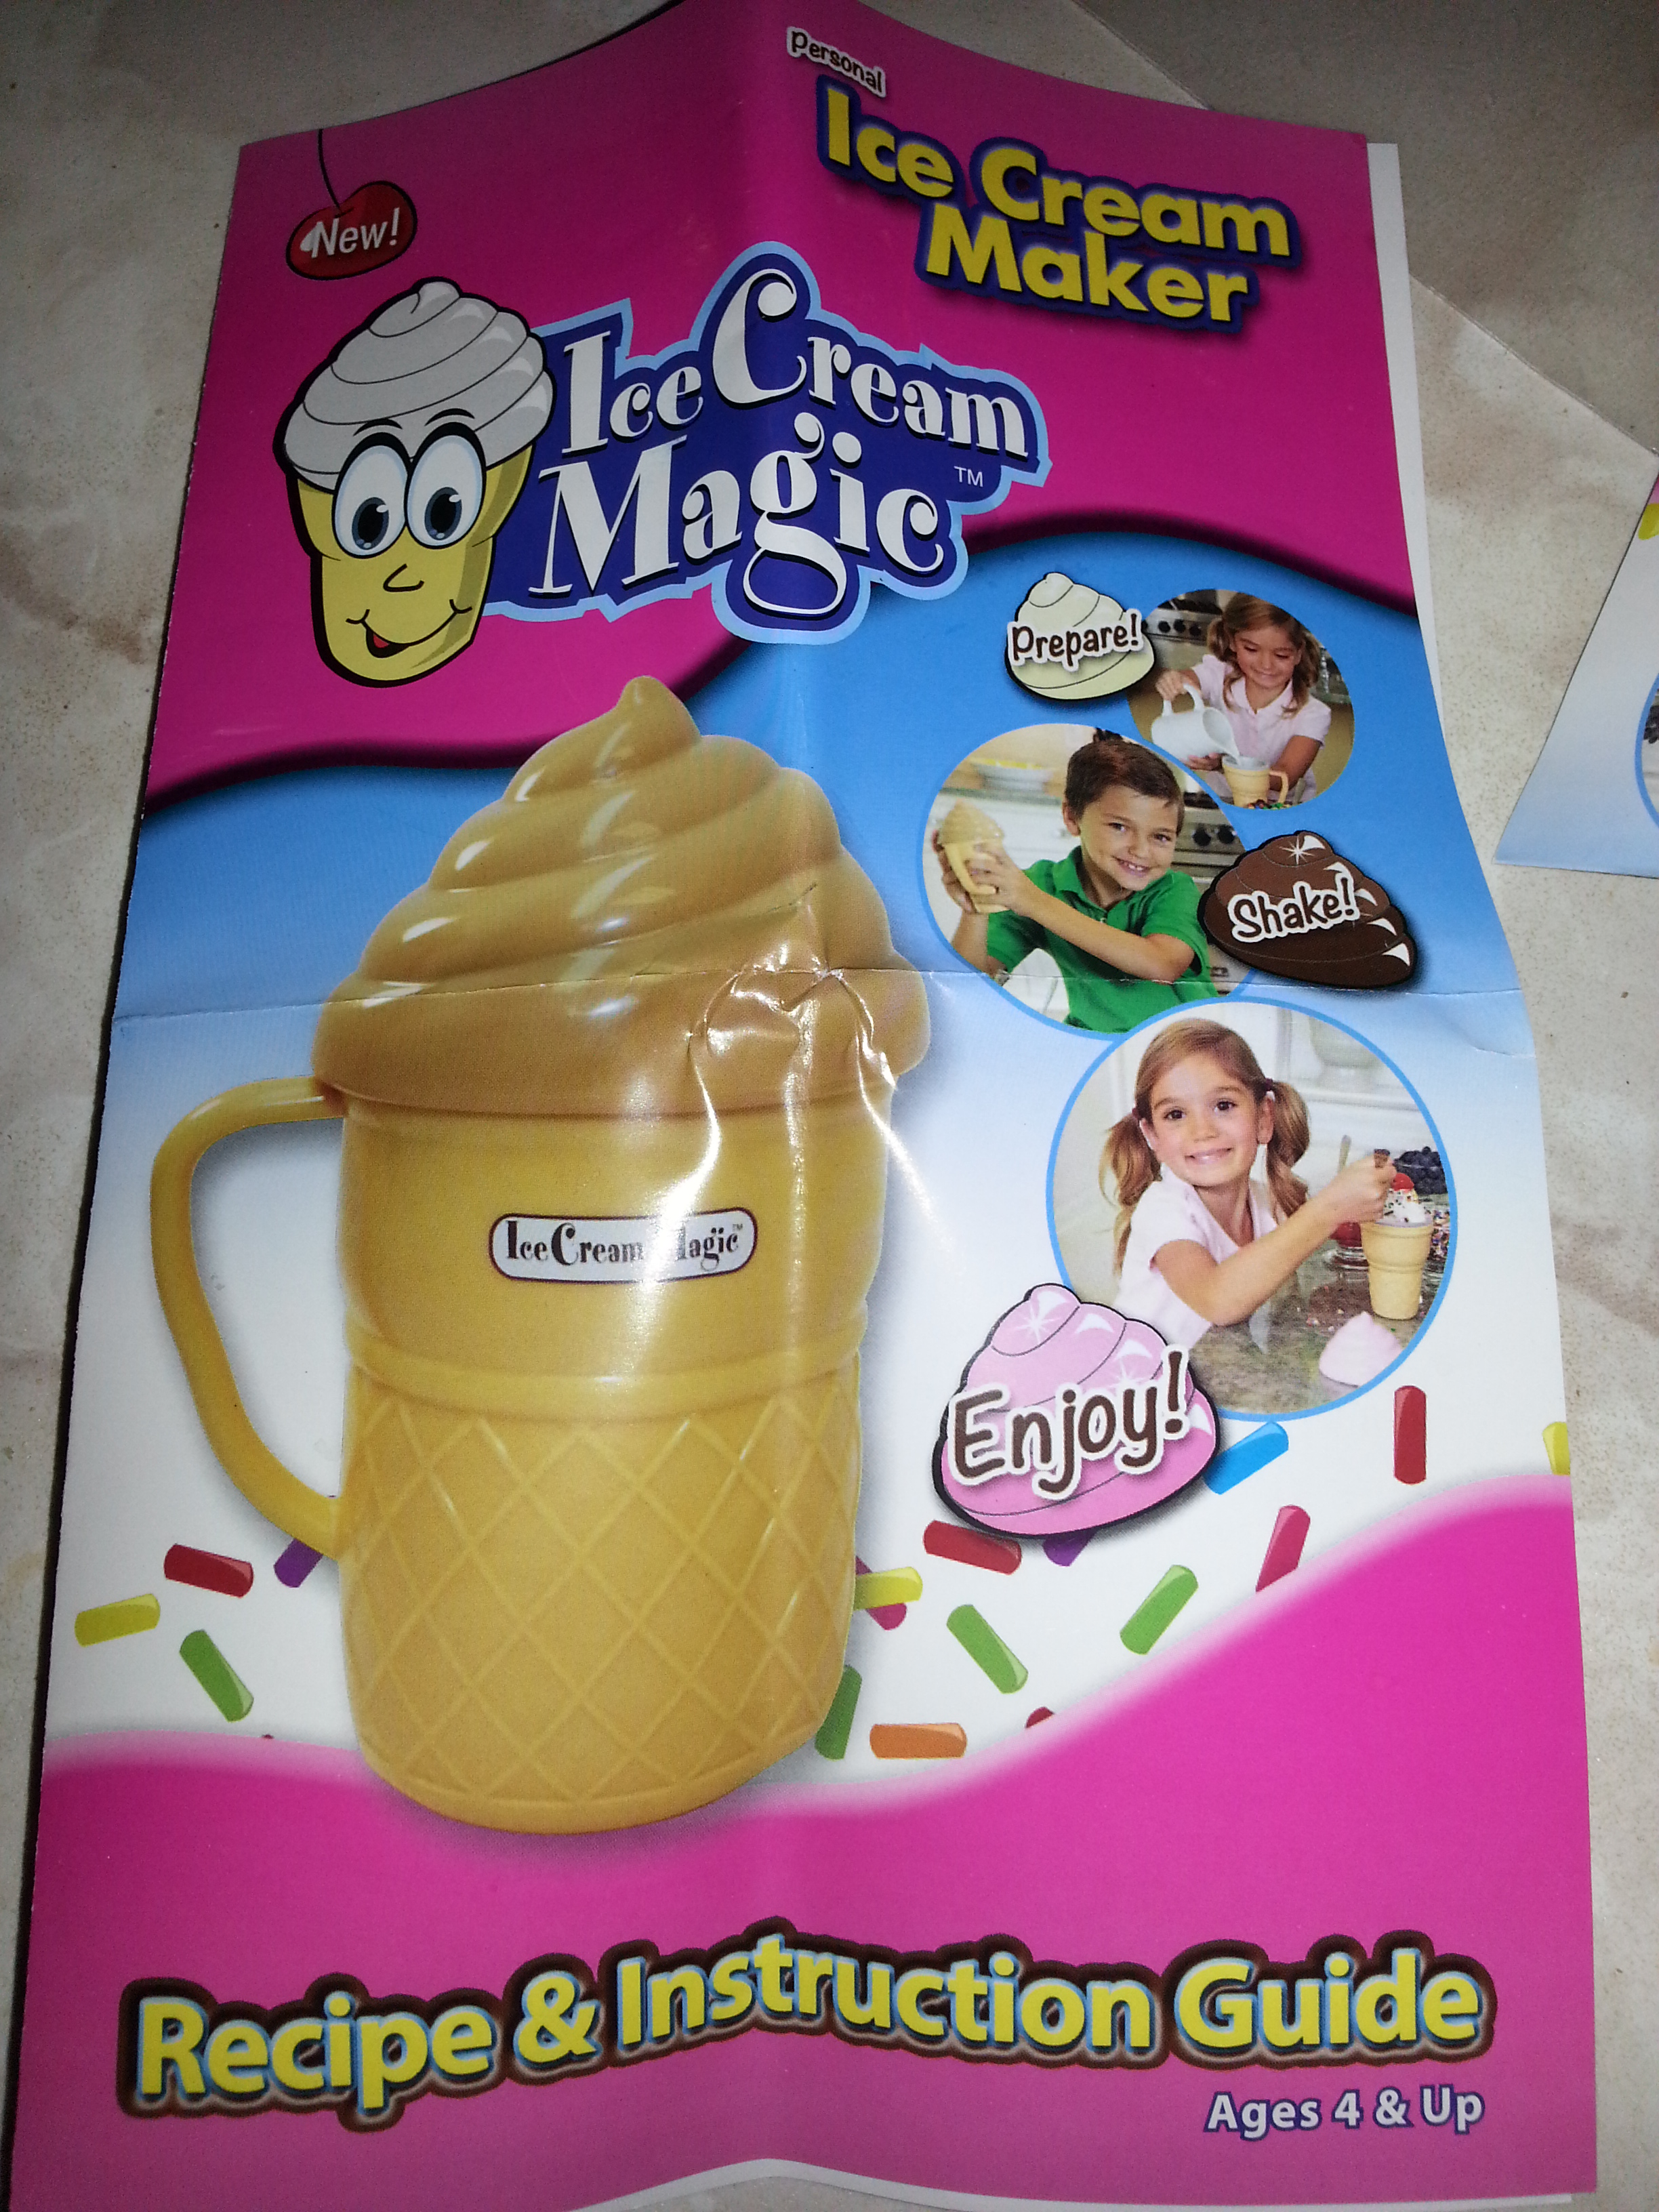 ICE CREAM MAGIC Personal Ice Cream Maker!!! Demo 